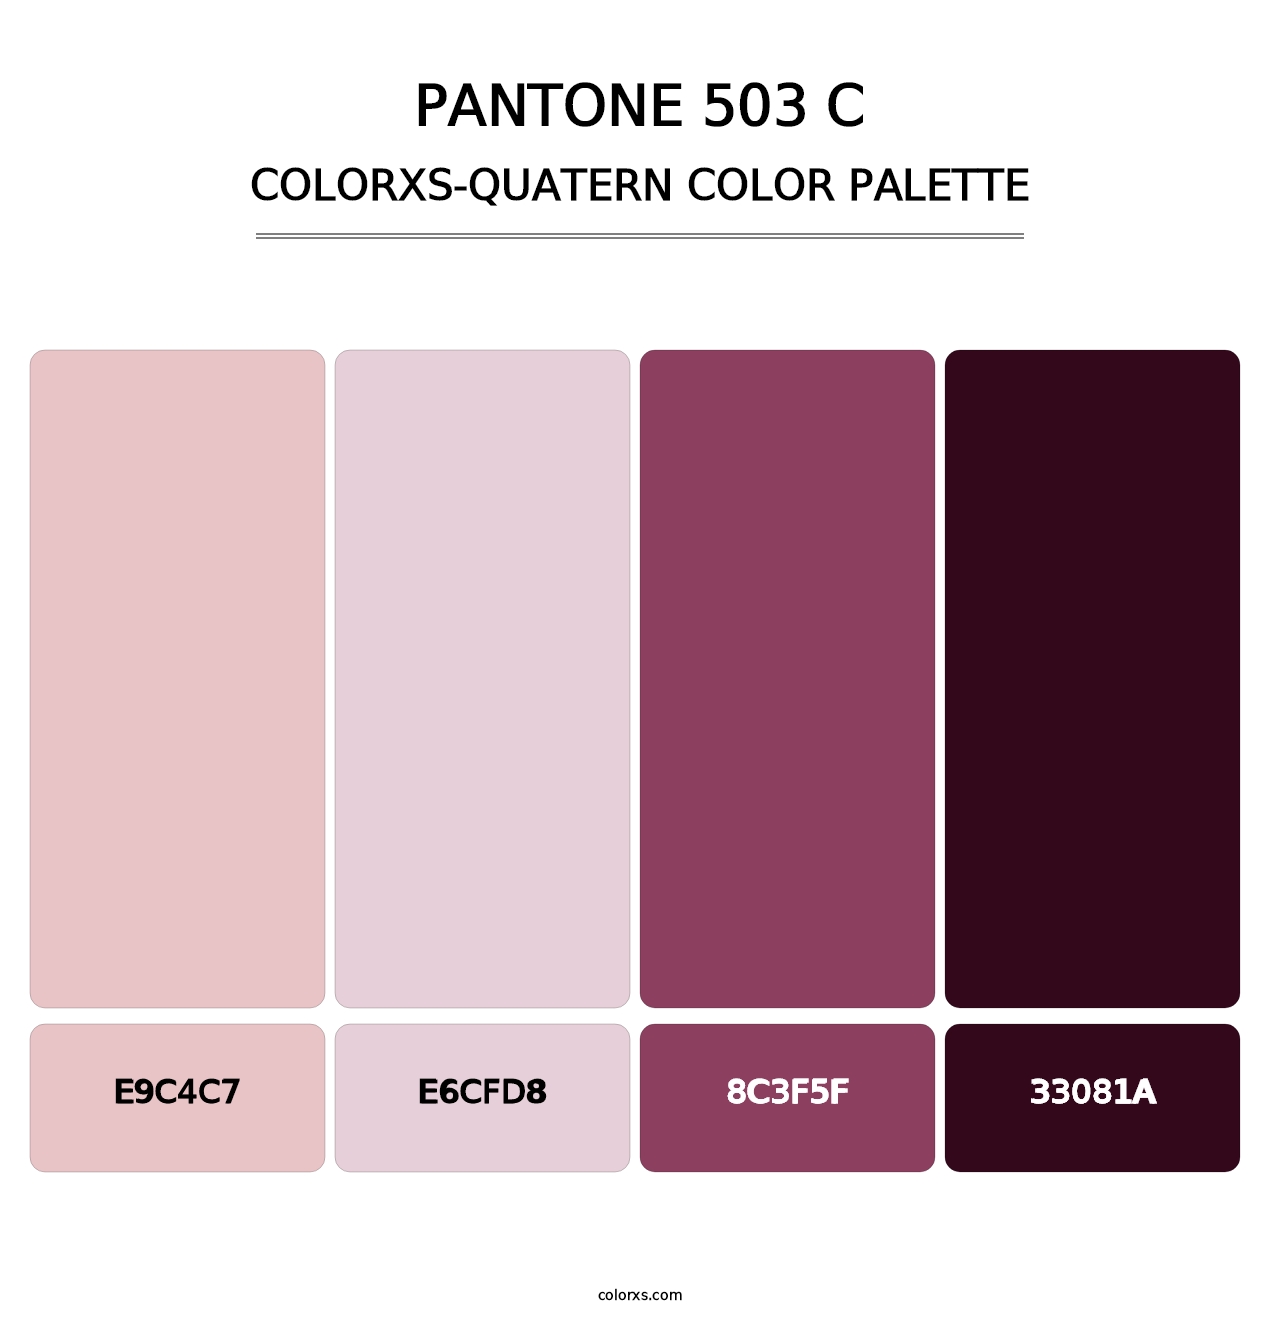 PANTONE 503 C - Colorxs Quatern Palette